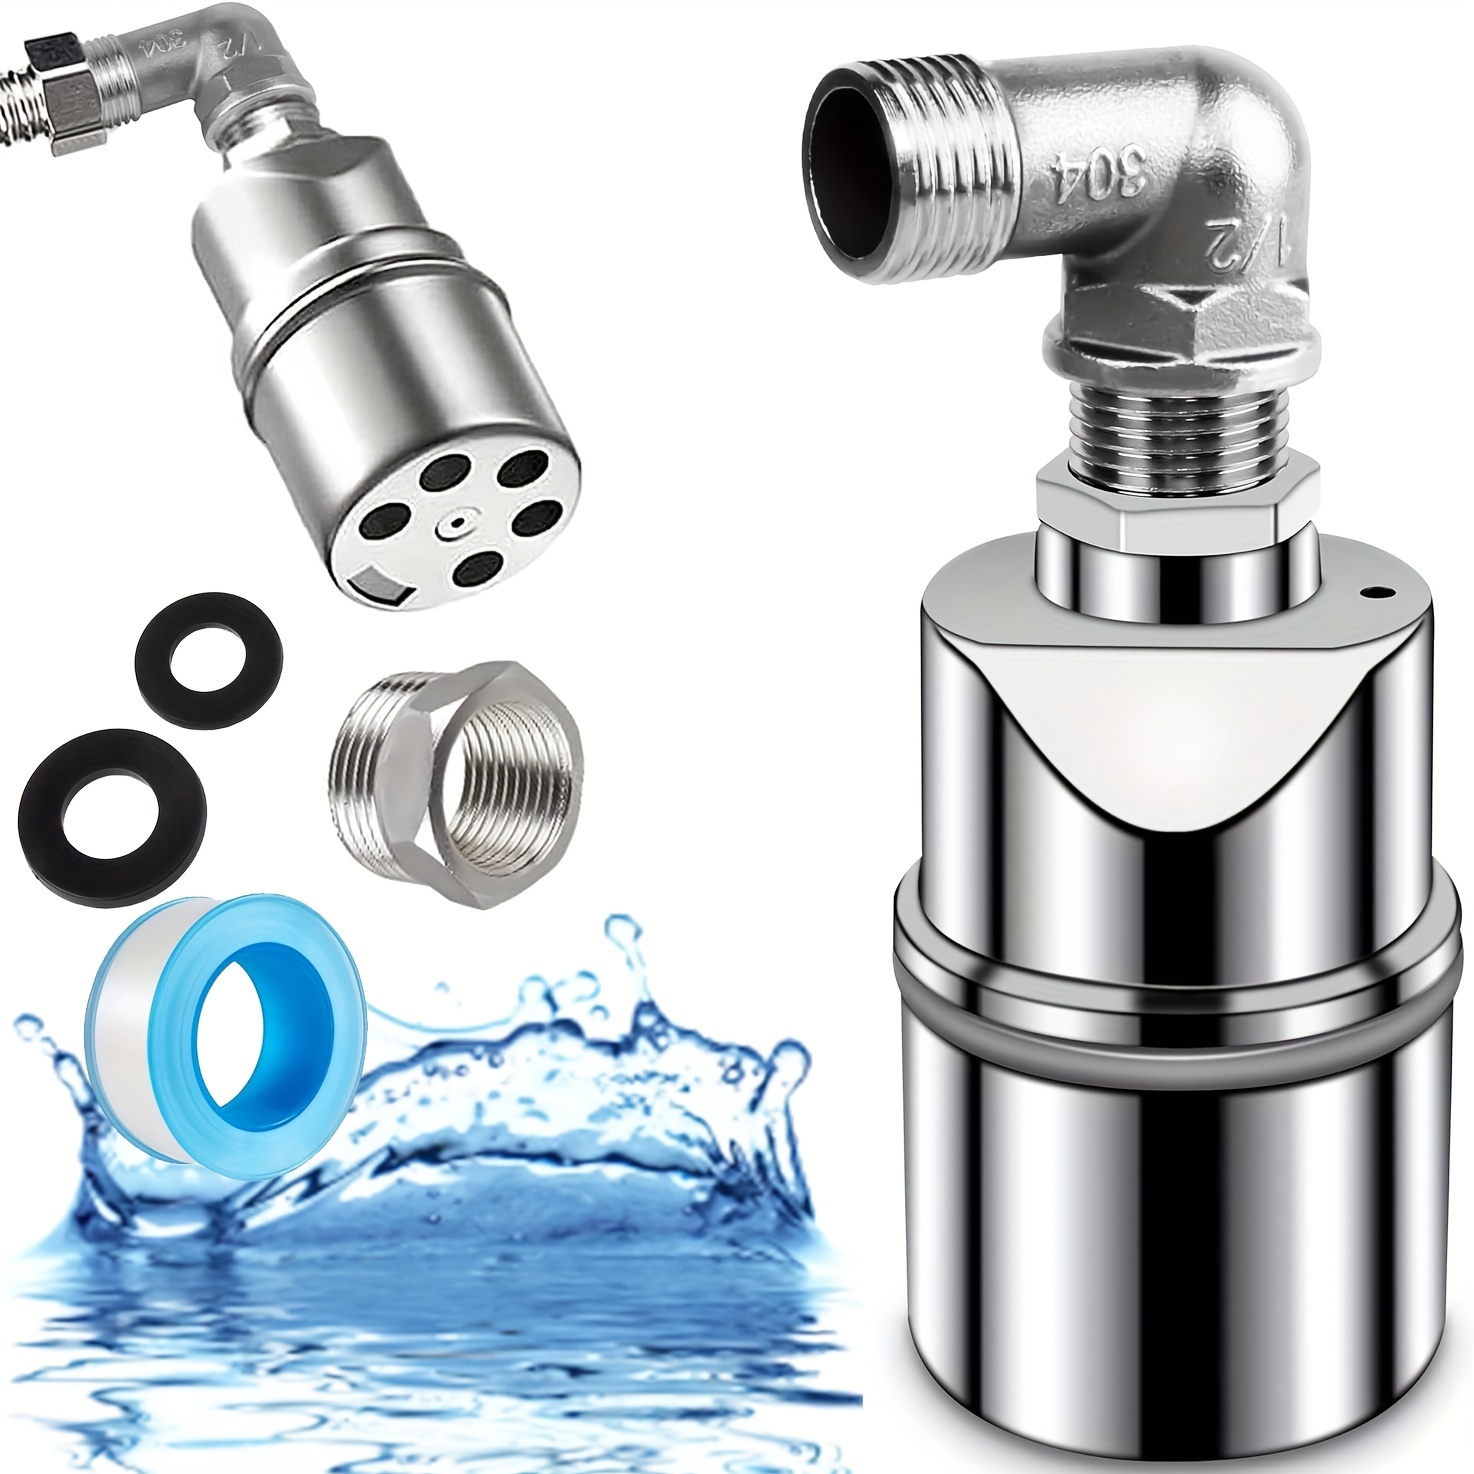 Depósito Agua Potable 1500 litros AQF1500 - Zeta Trades S.L.U.